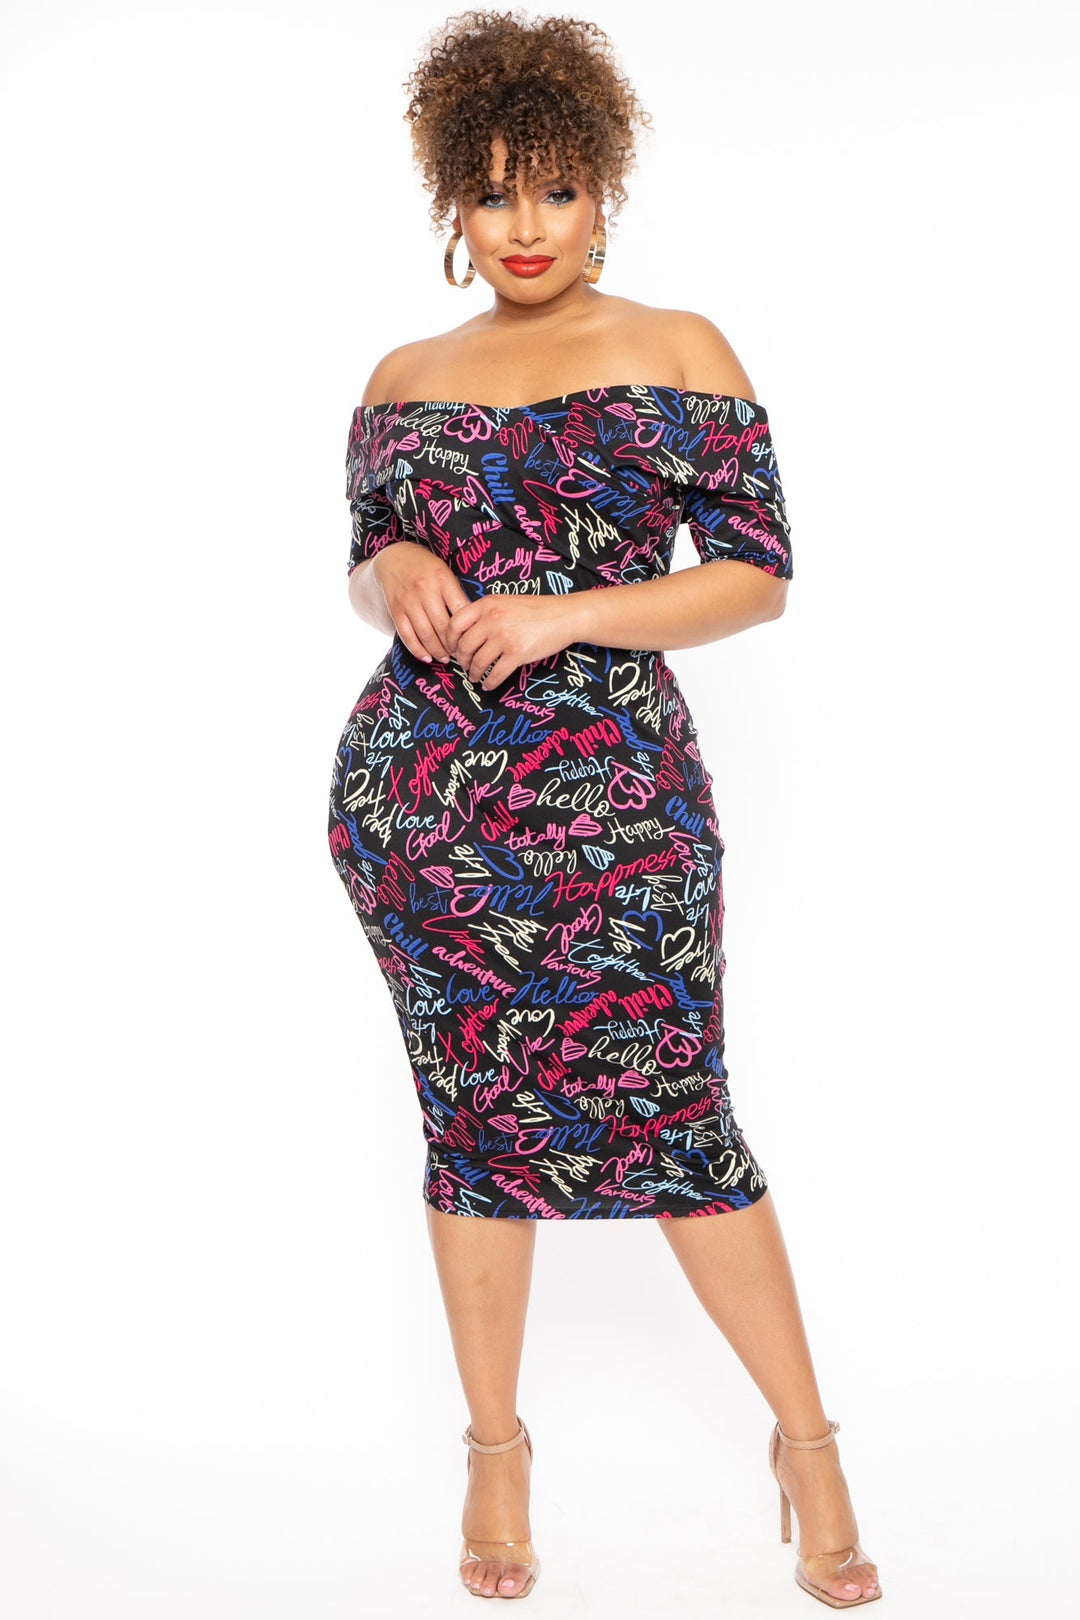 Curvy Sense Dresses Plus Size Lydia Graffiti Dress- Black